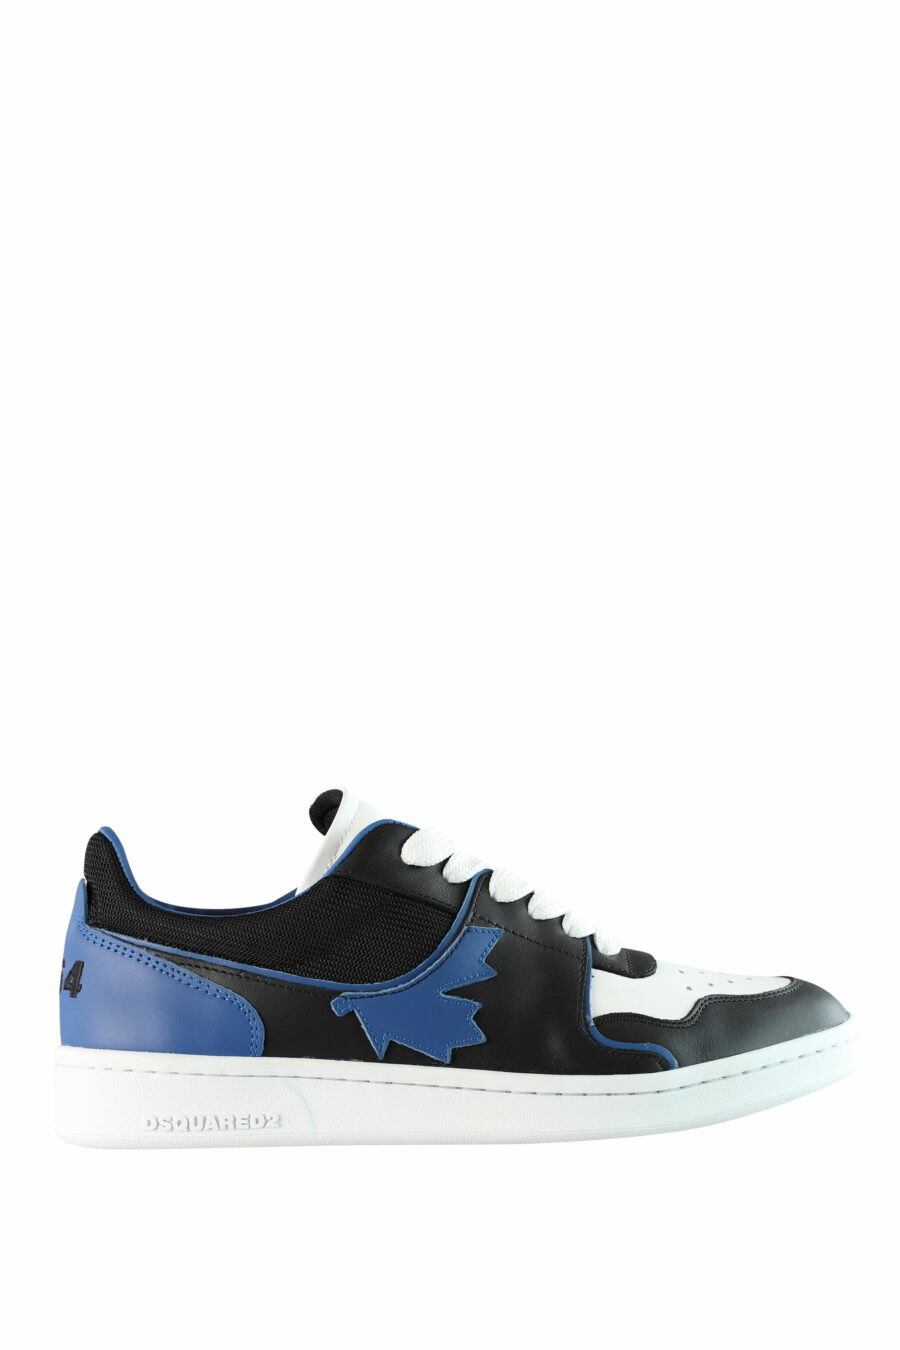 Zapatillas bicolor negras y azules "boxer" con detalles en blanco - IMG 1545